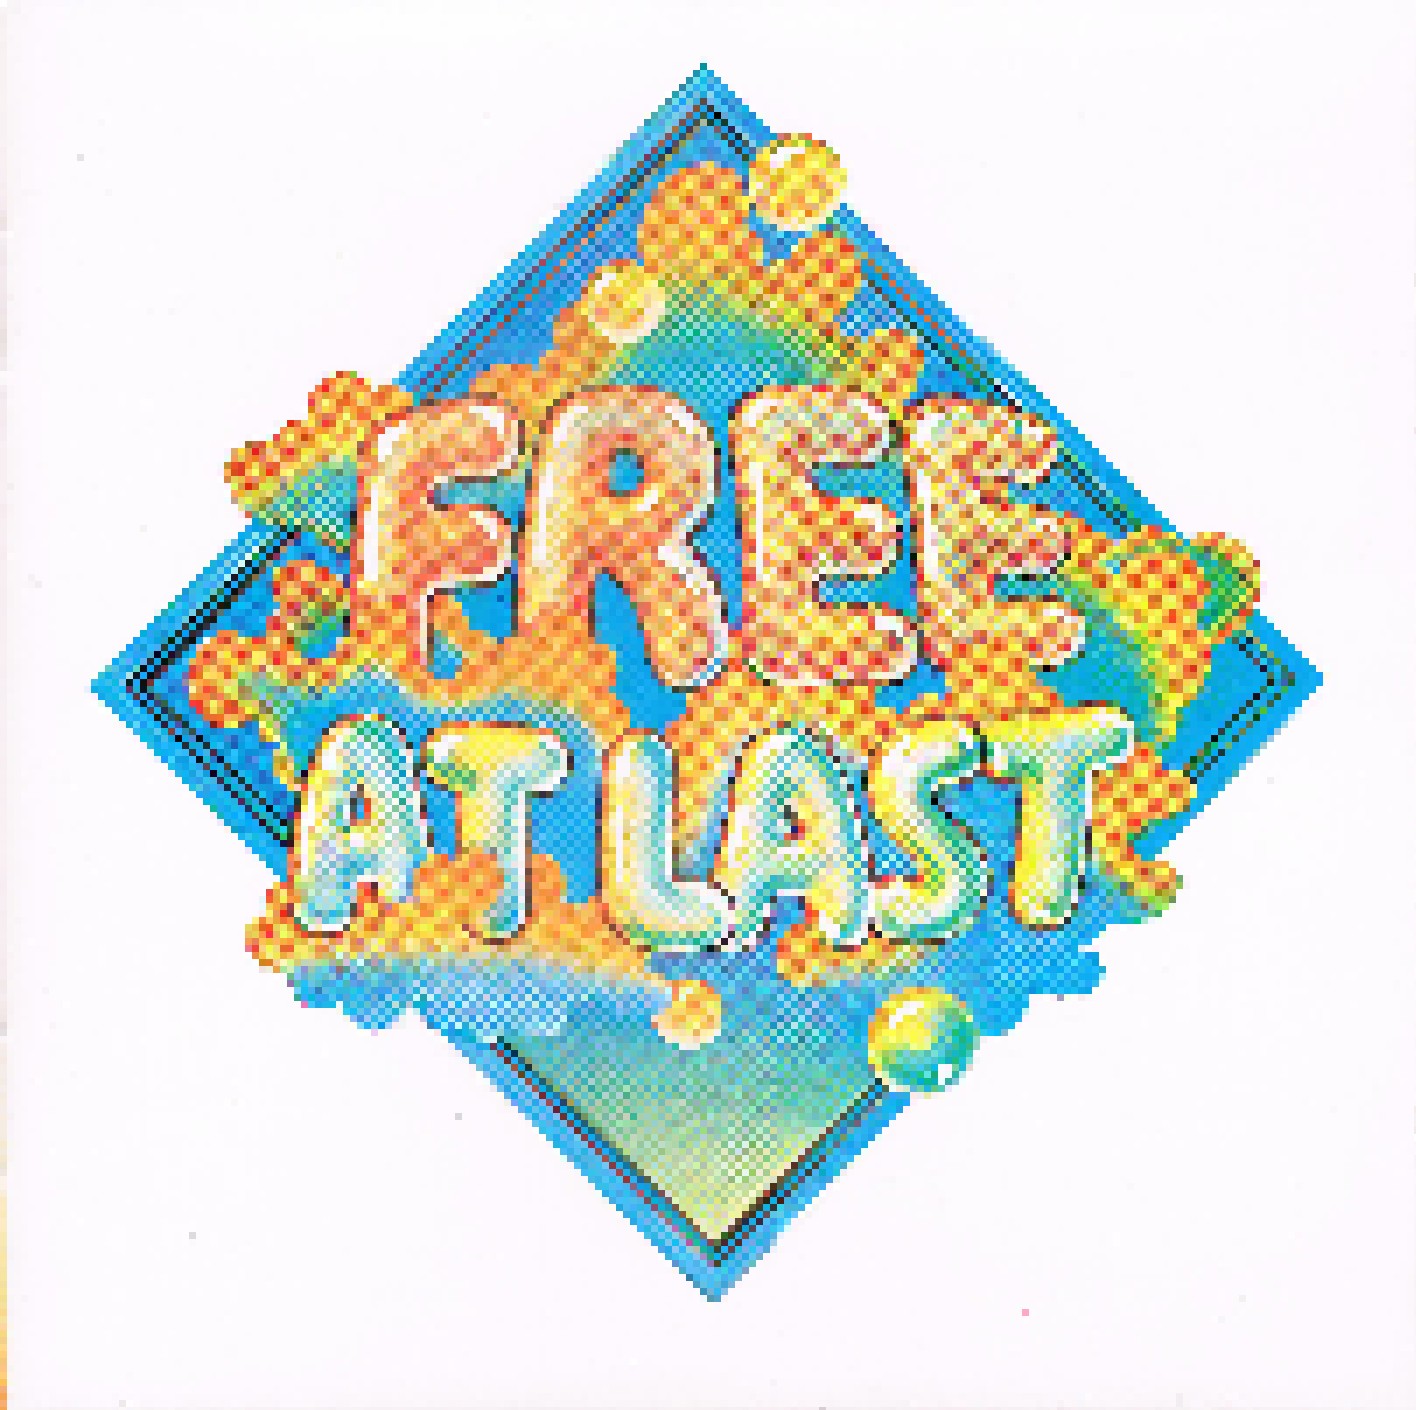 At last. Free at last. Free 1972 free at last. Free "free at last". Free at last обложка альбома.